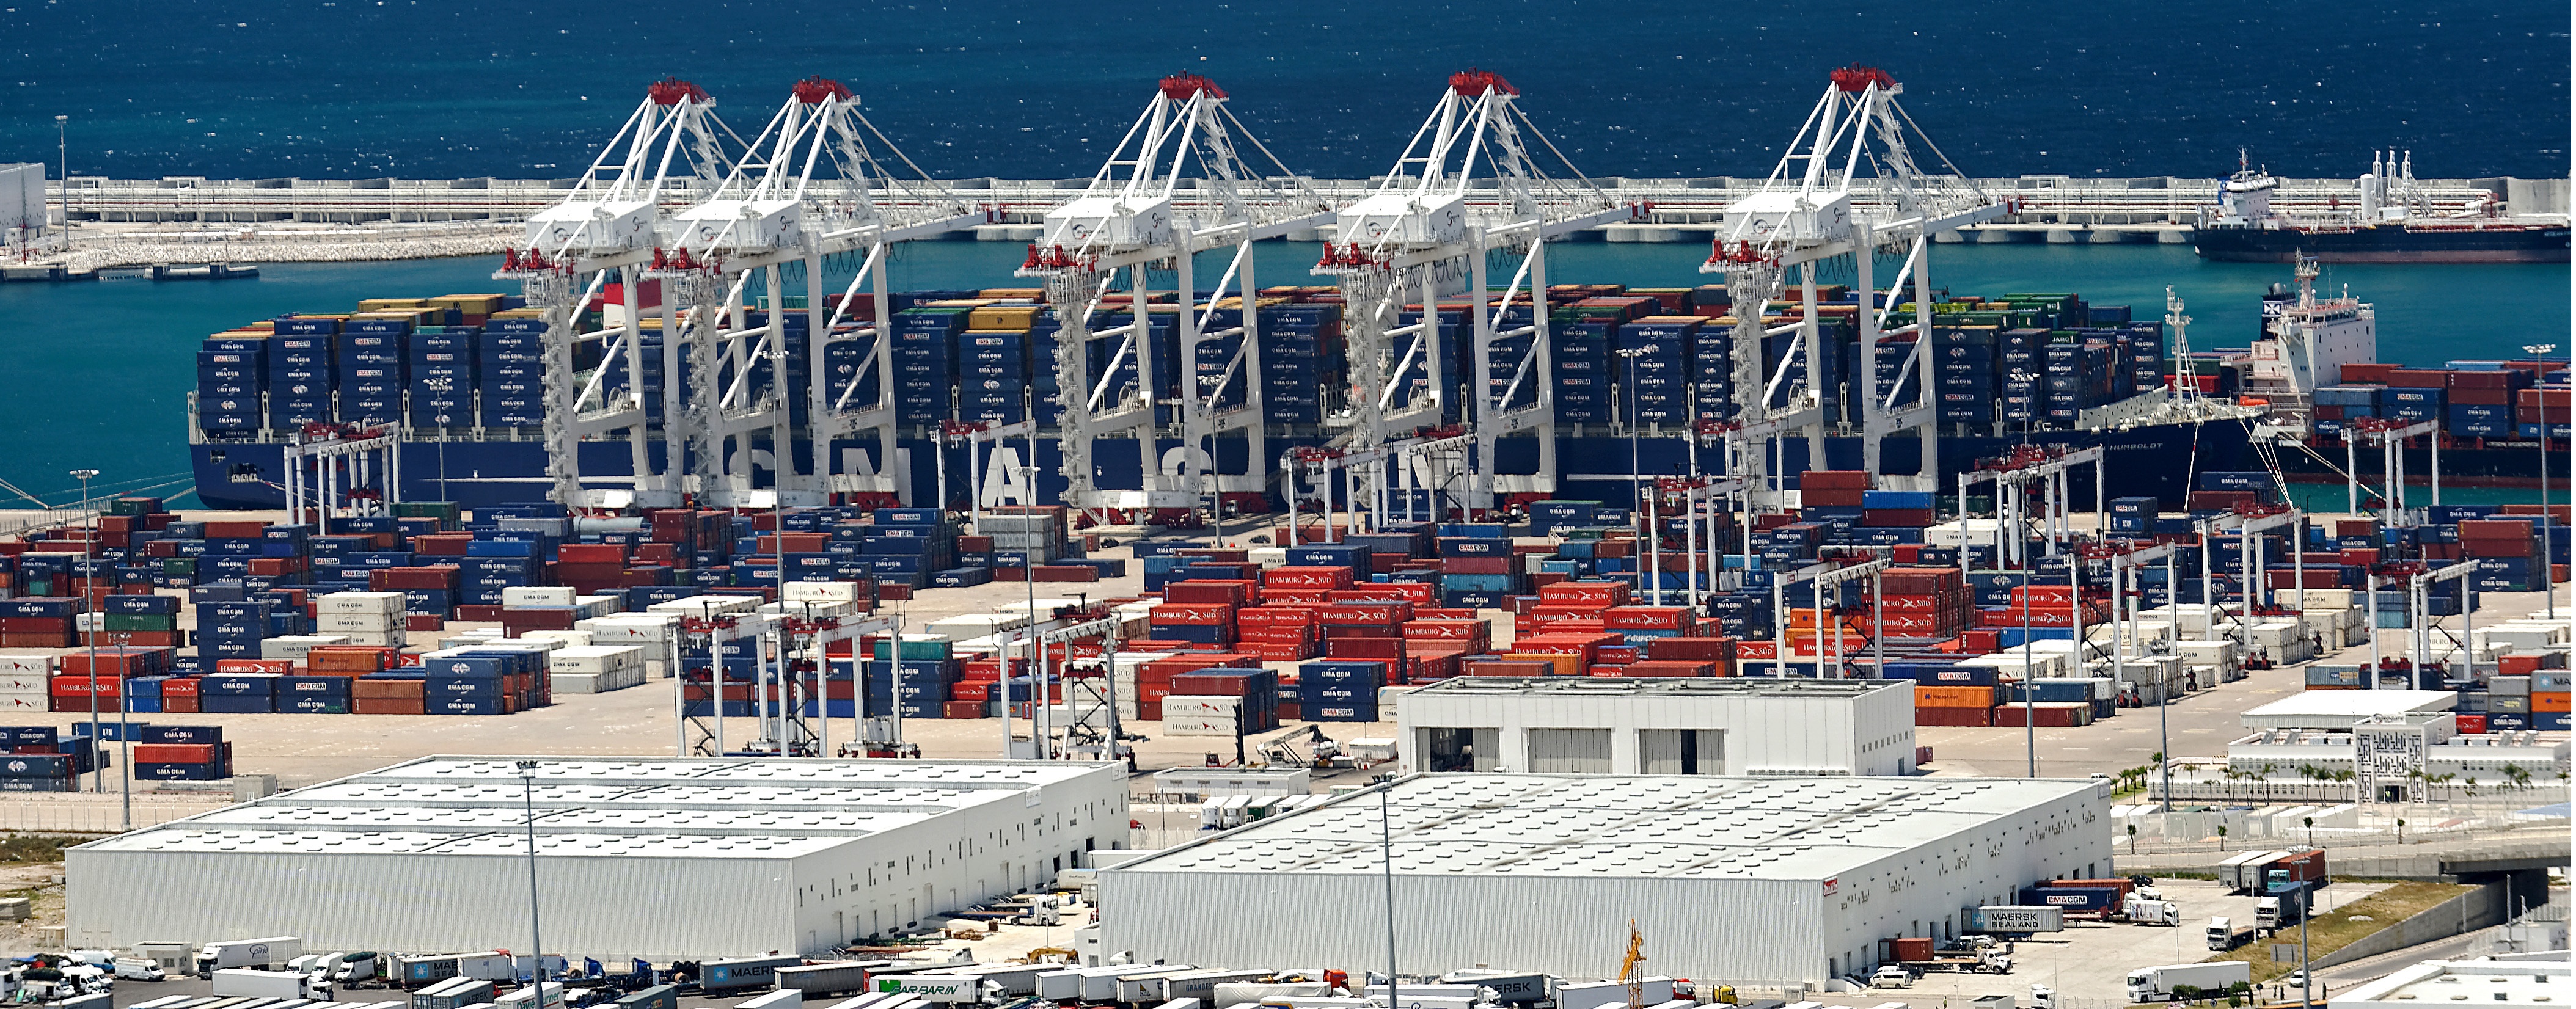 Transport maritime: Les capacité de la flotte marocaine baissent de 7% par an 